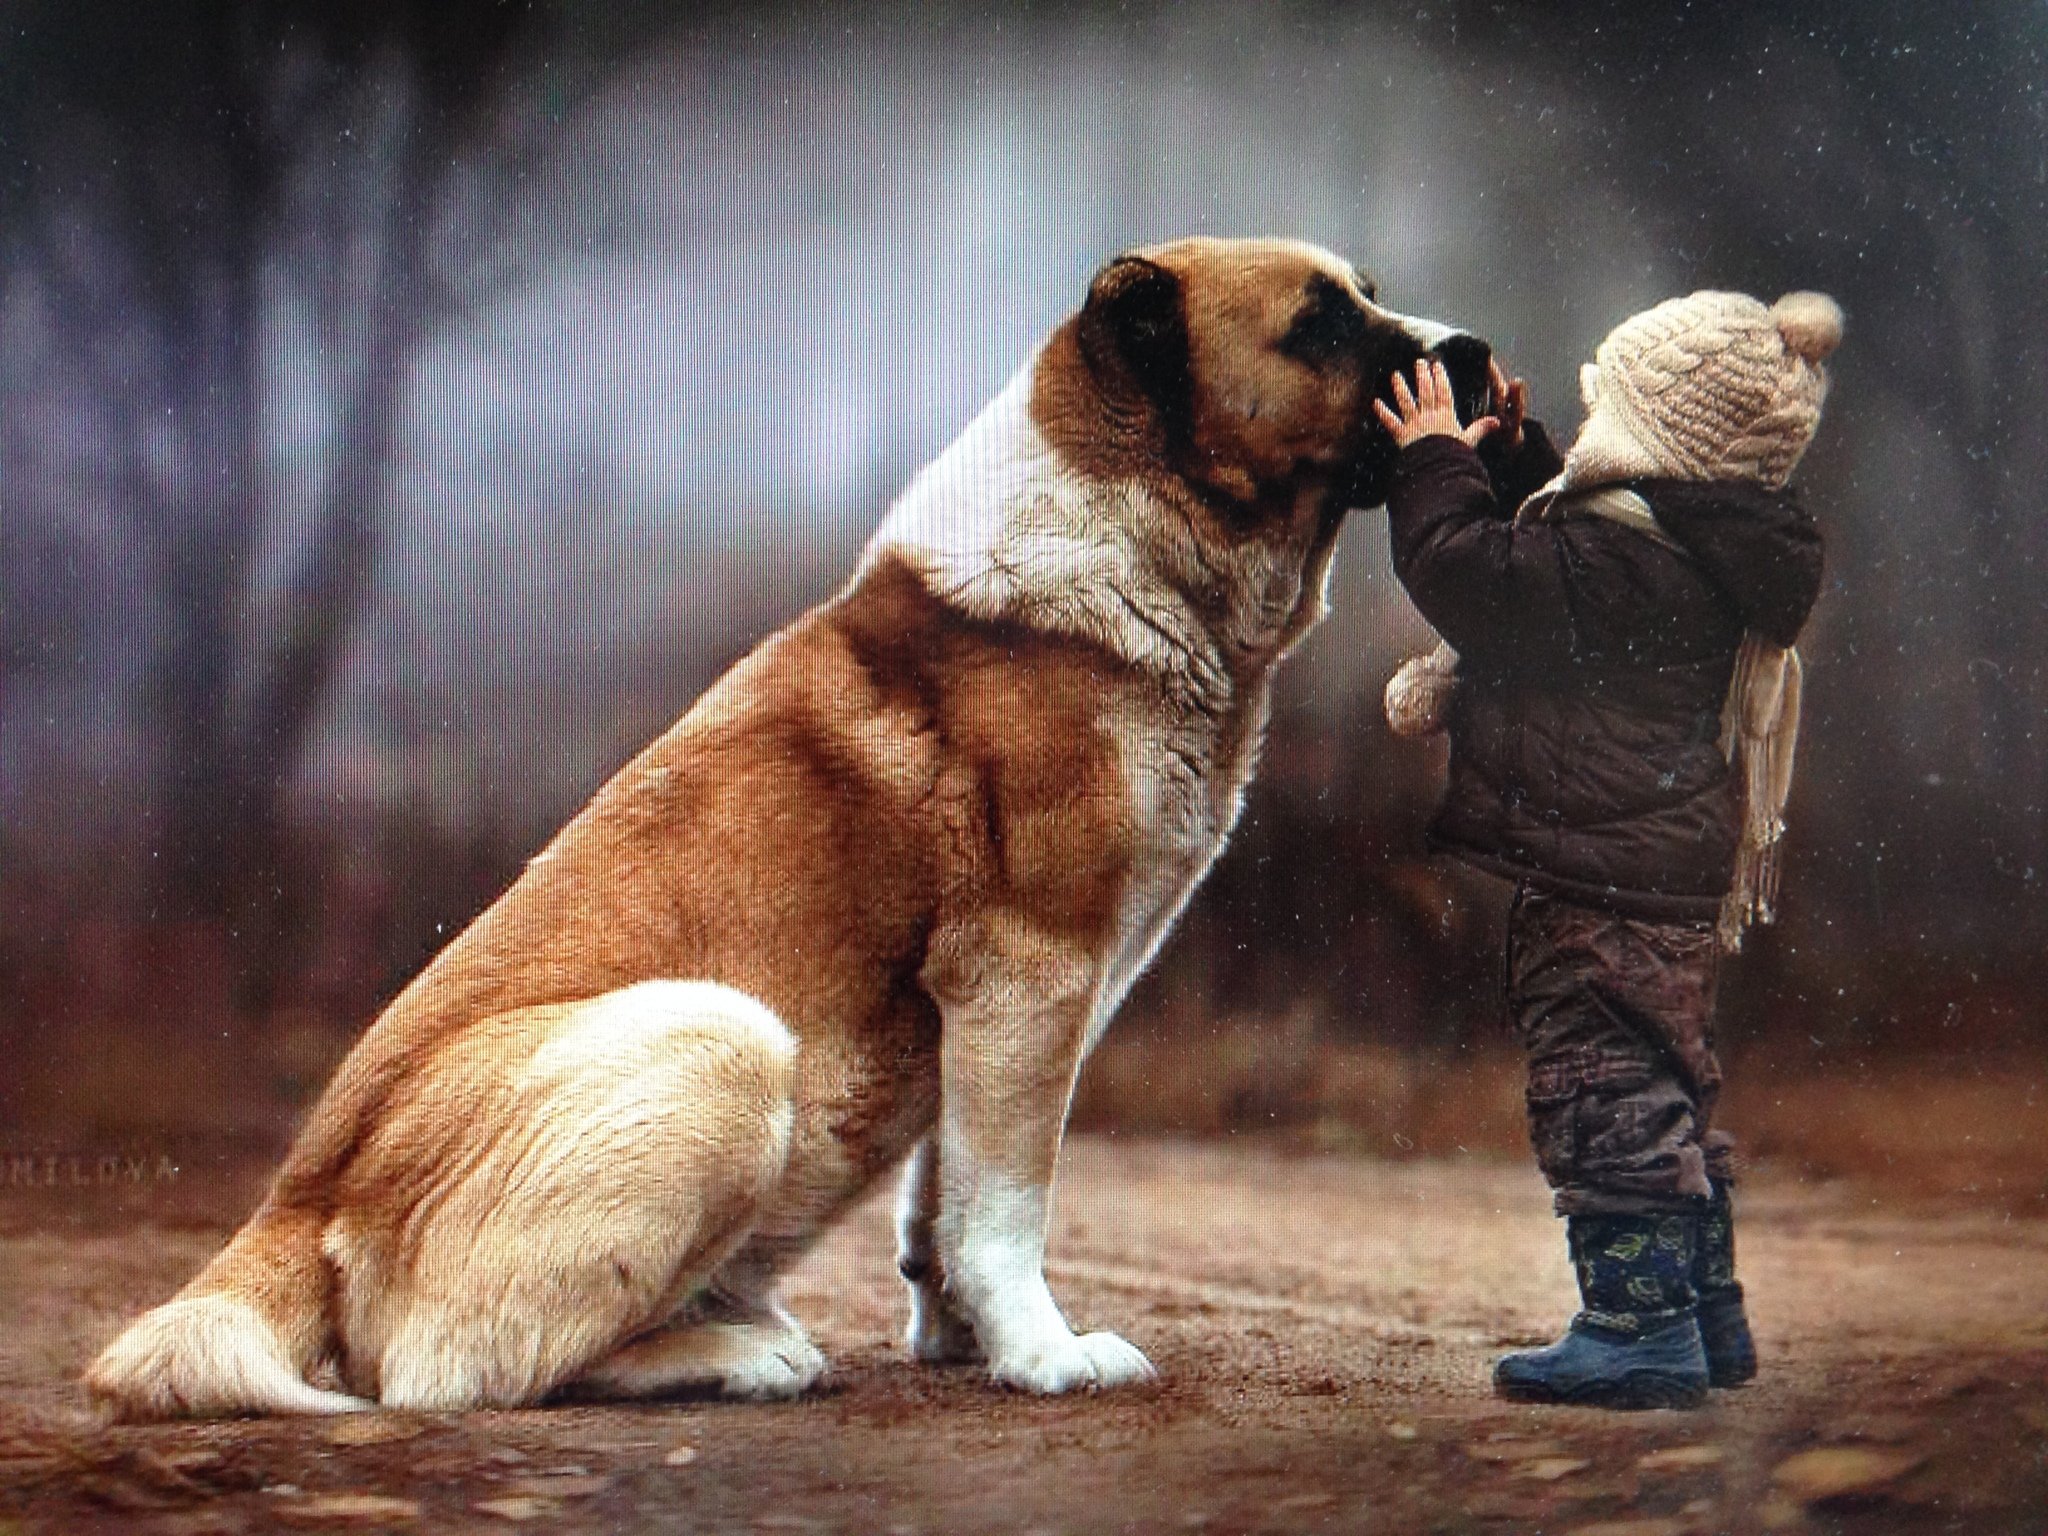 Egy gyengéd érintés - barátság kutya és gyerek között